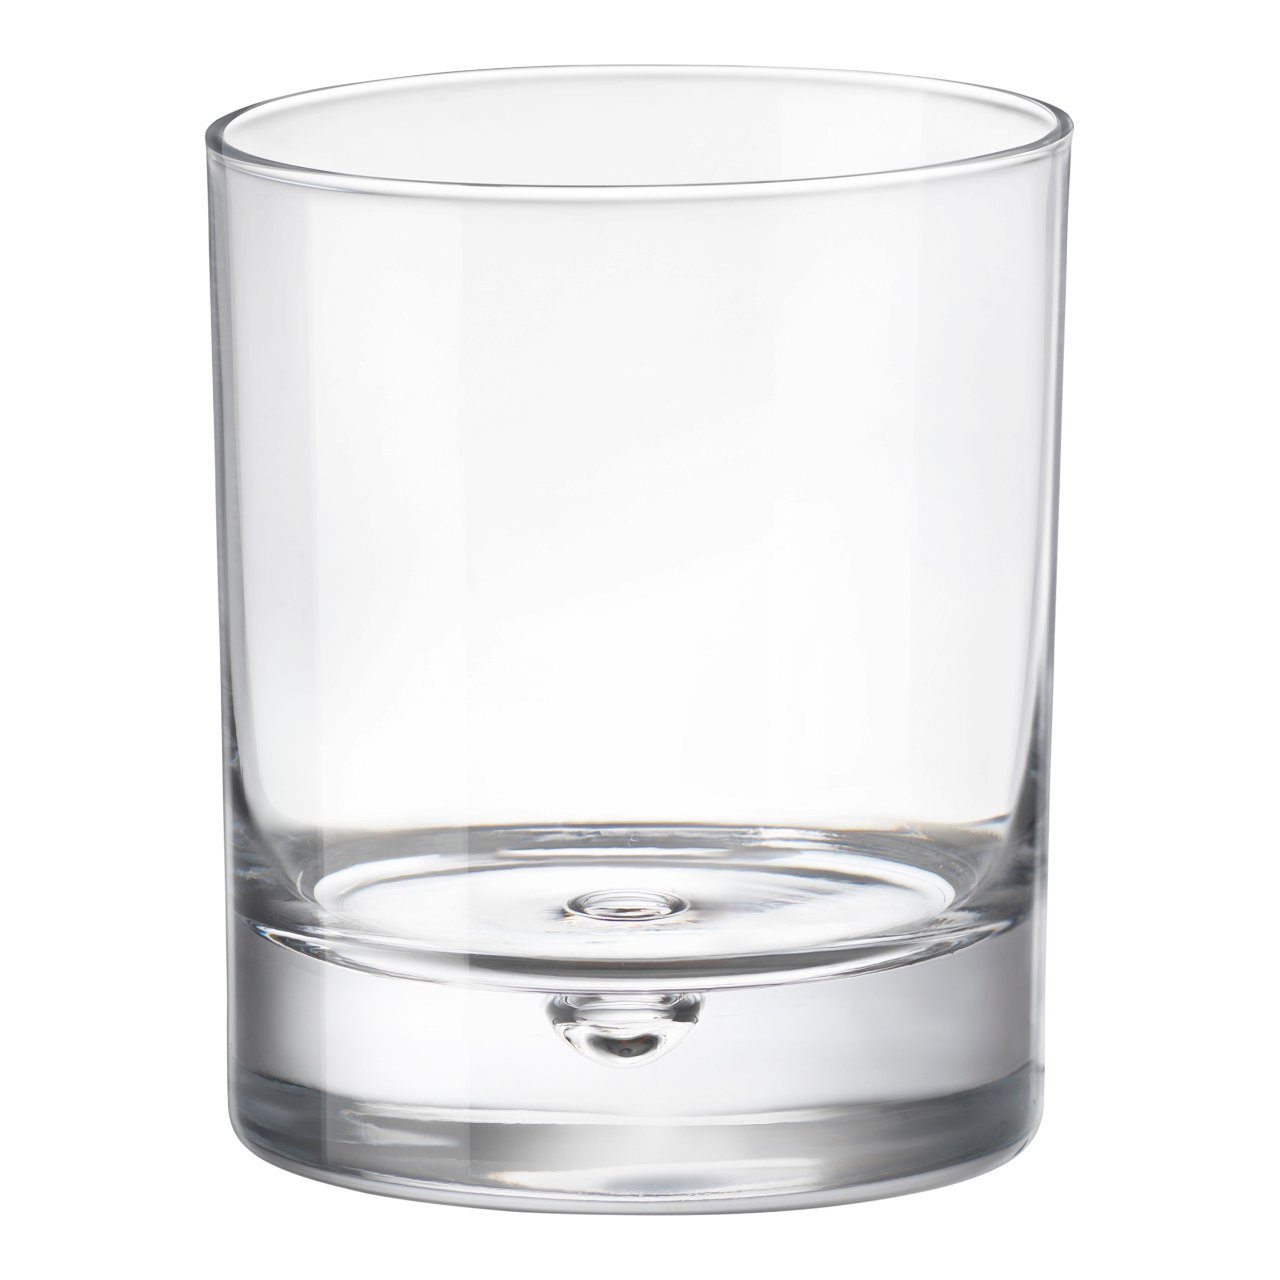 Whiskyglas 28cl